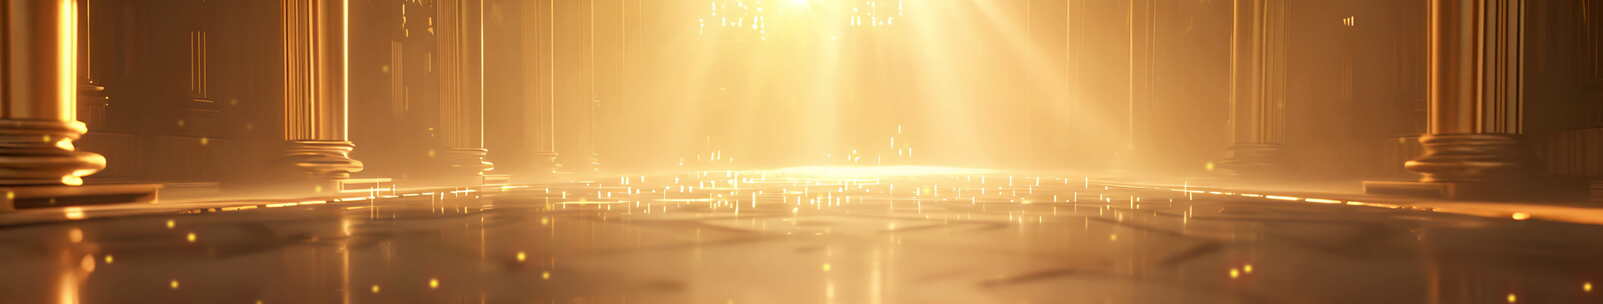 金碧辉煌的颁奖舞台大气开场超宽LED背景